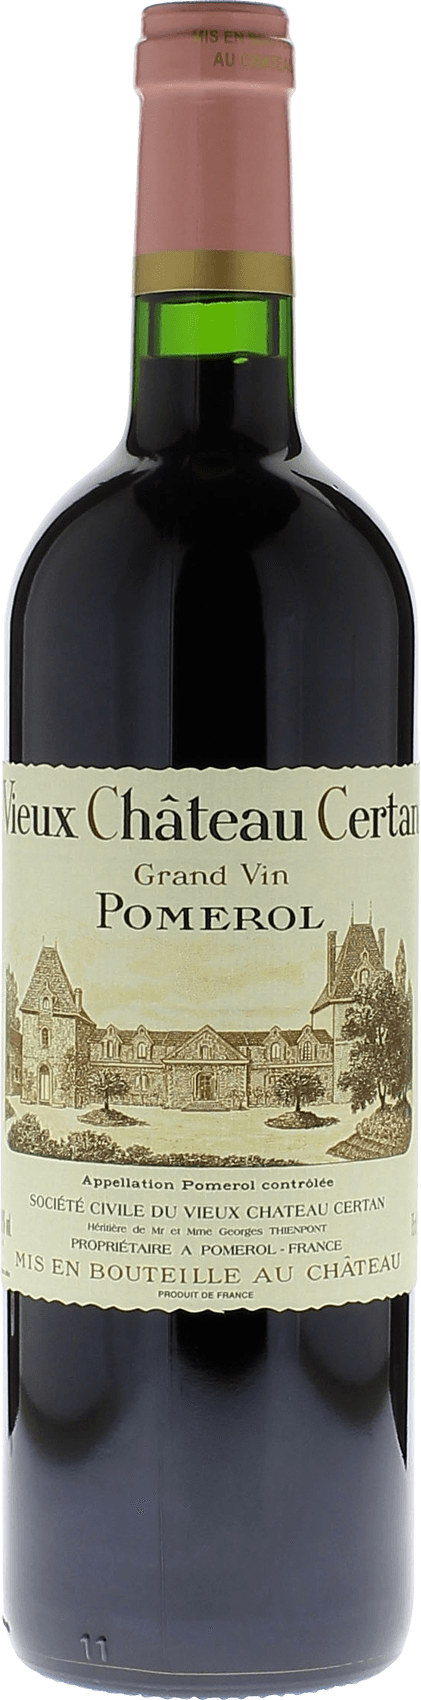 Vieux chteau  certan 1980  Pomerol, Bordeaux rouge